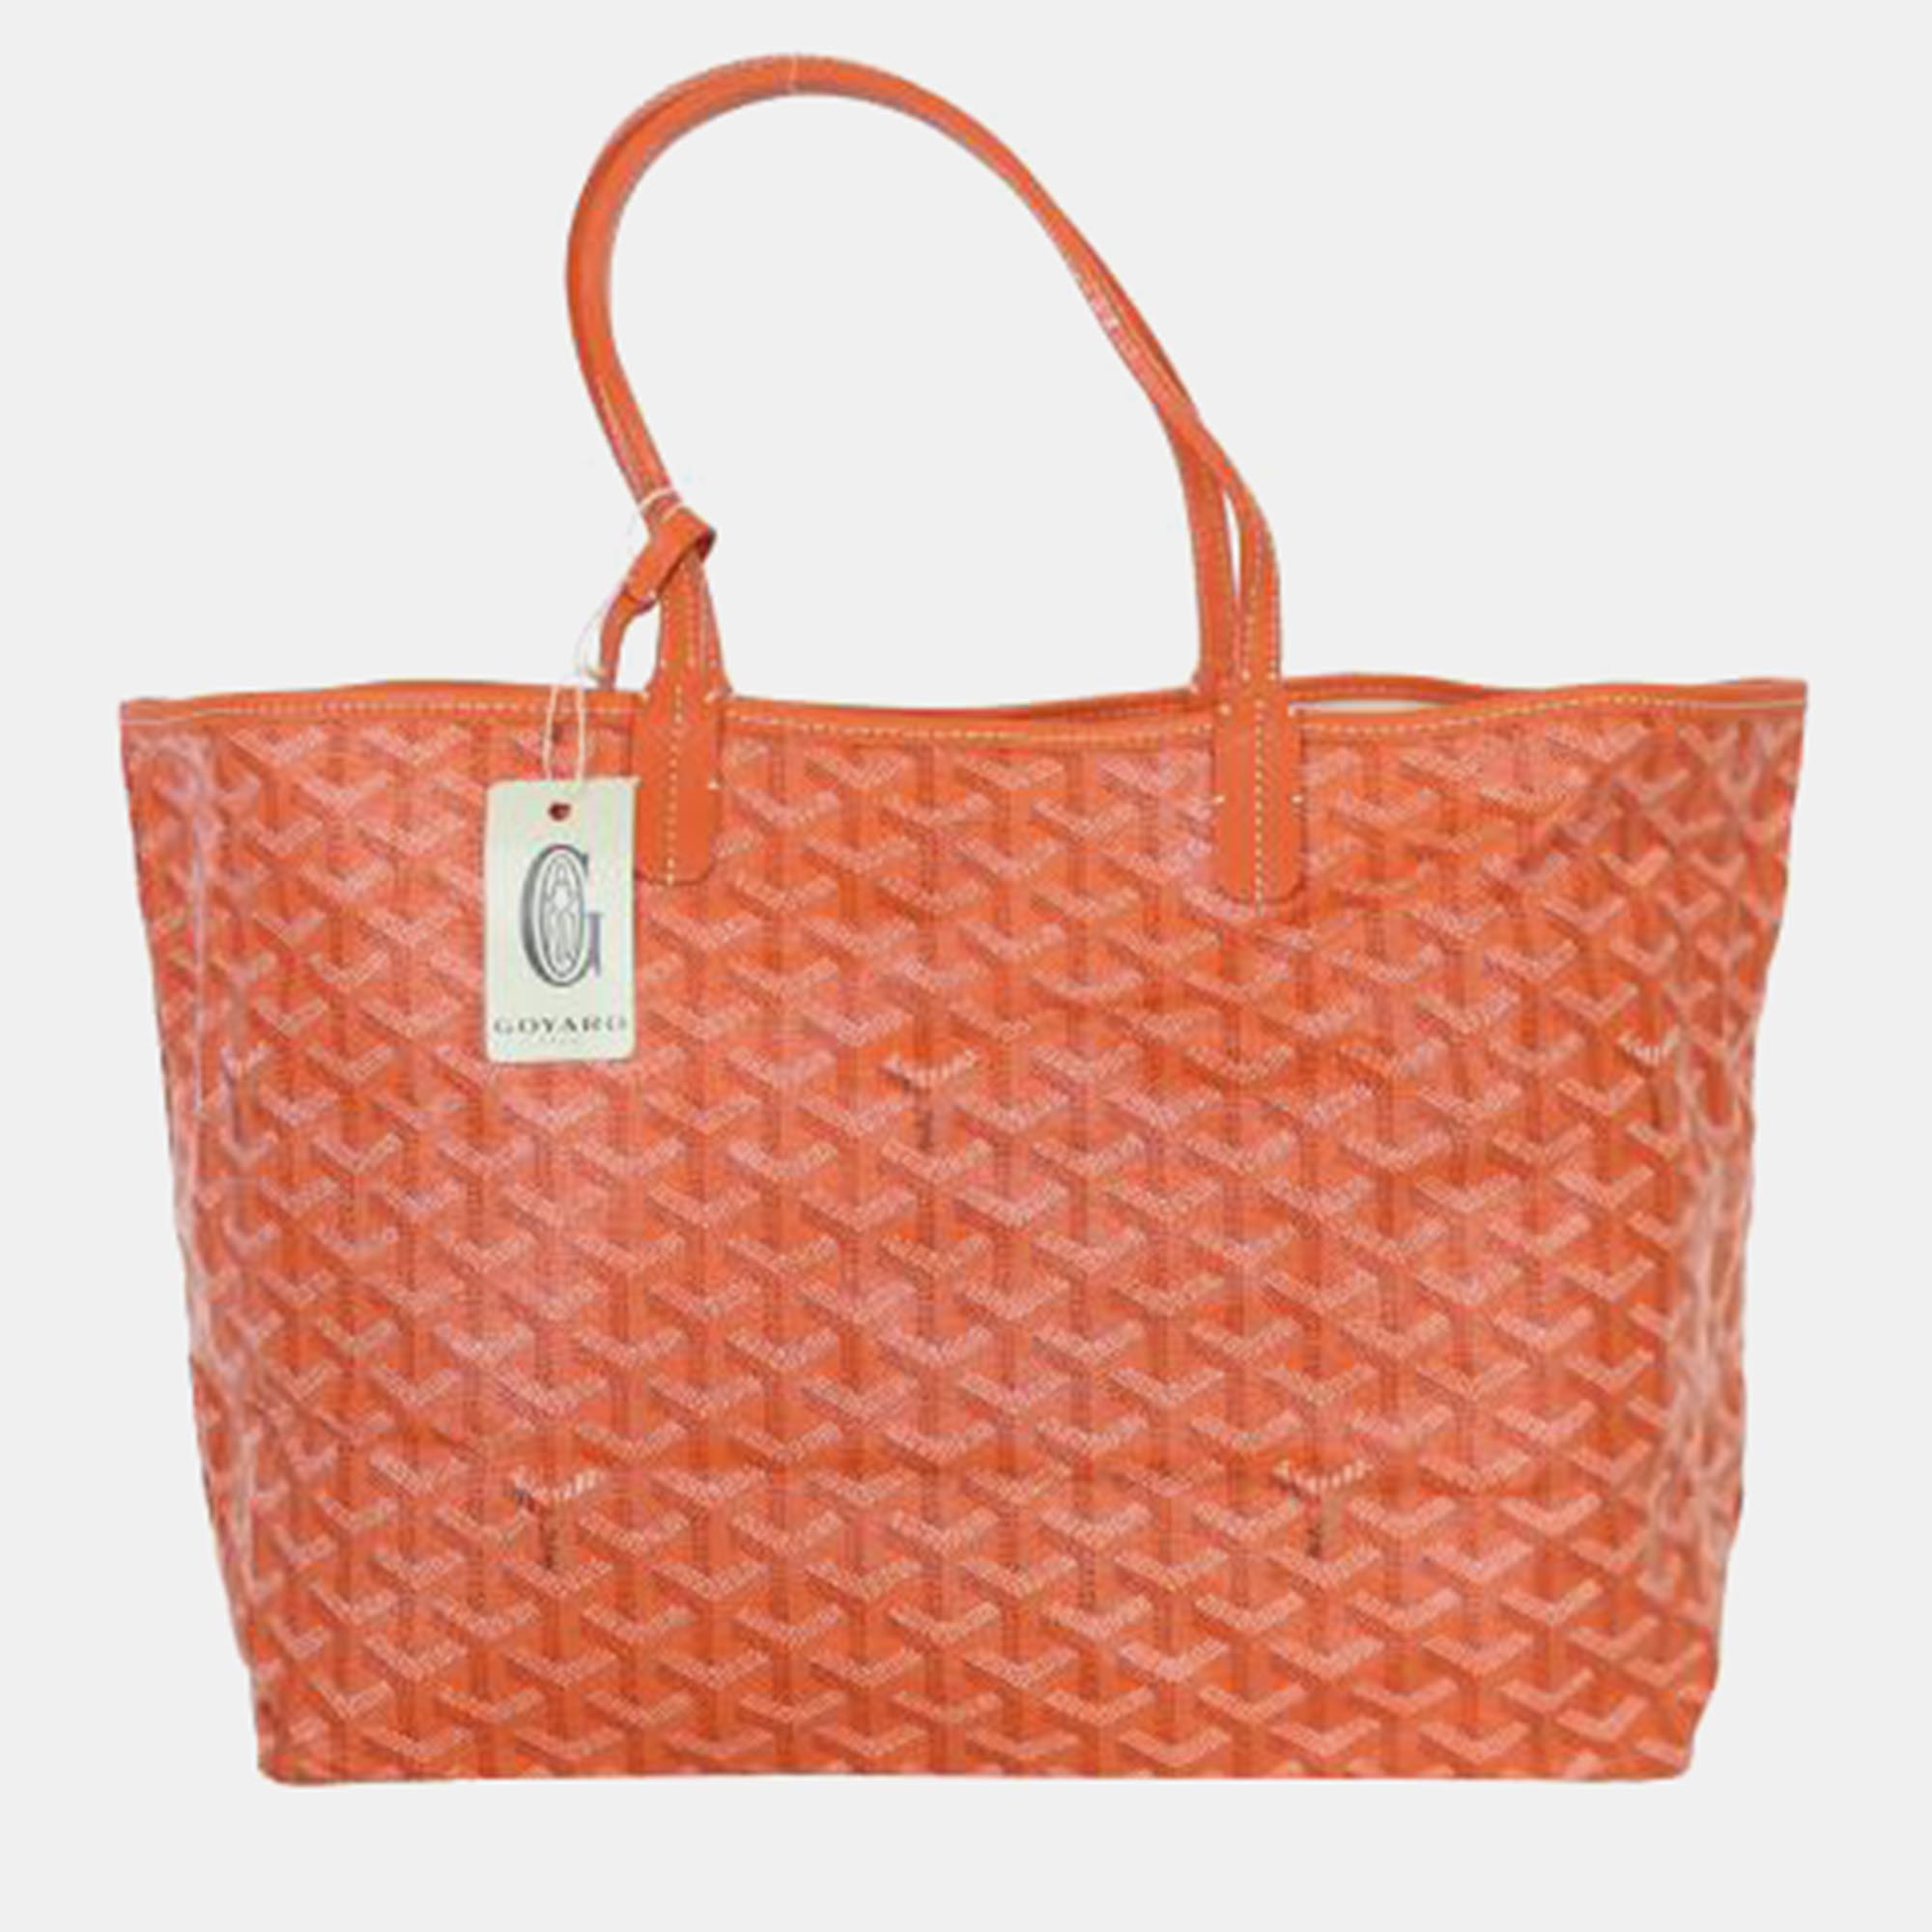 Goyard orange st. louis pm tote bag